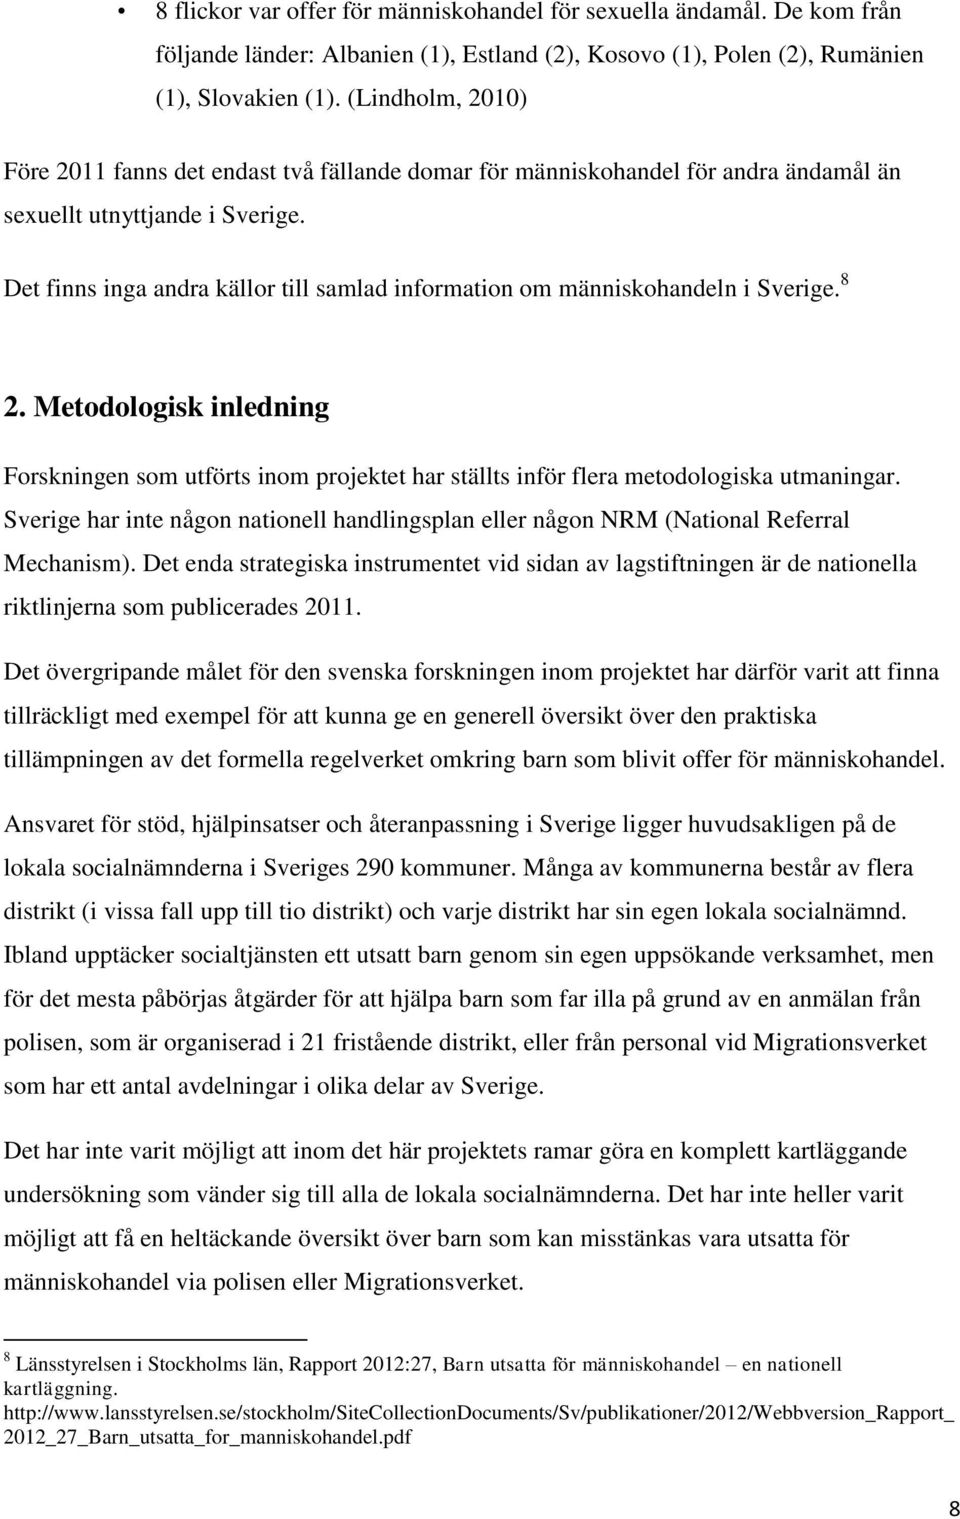 Det finns inga andra källor till samlad information om människohandeln i Sverige. 8 2. Metodologisk inledning Forskningen som utförts inom projektet har ställts inför flera metodologiska utmaningar.